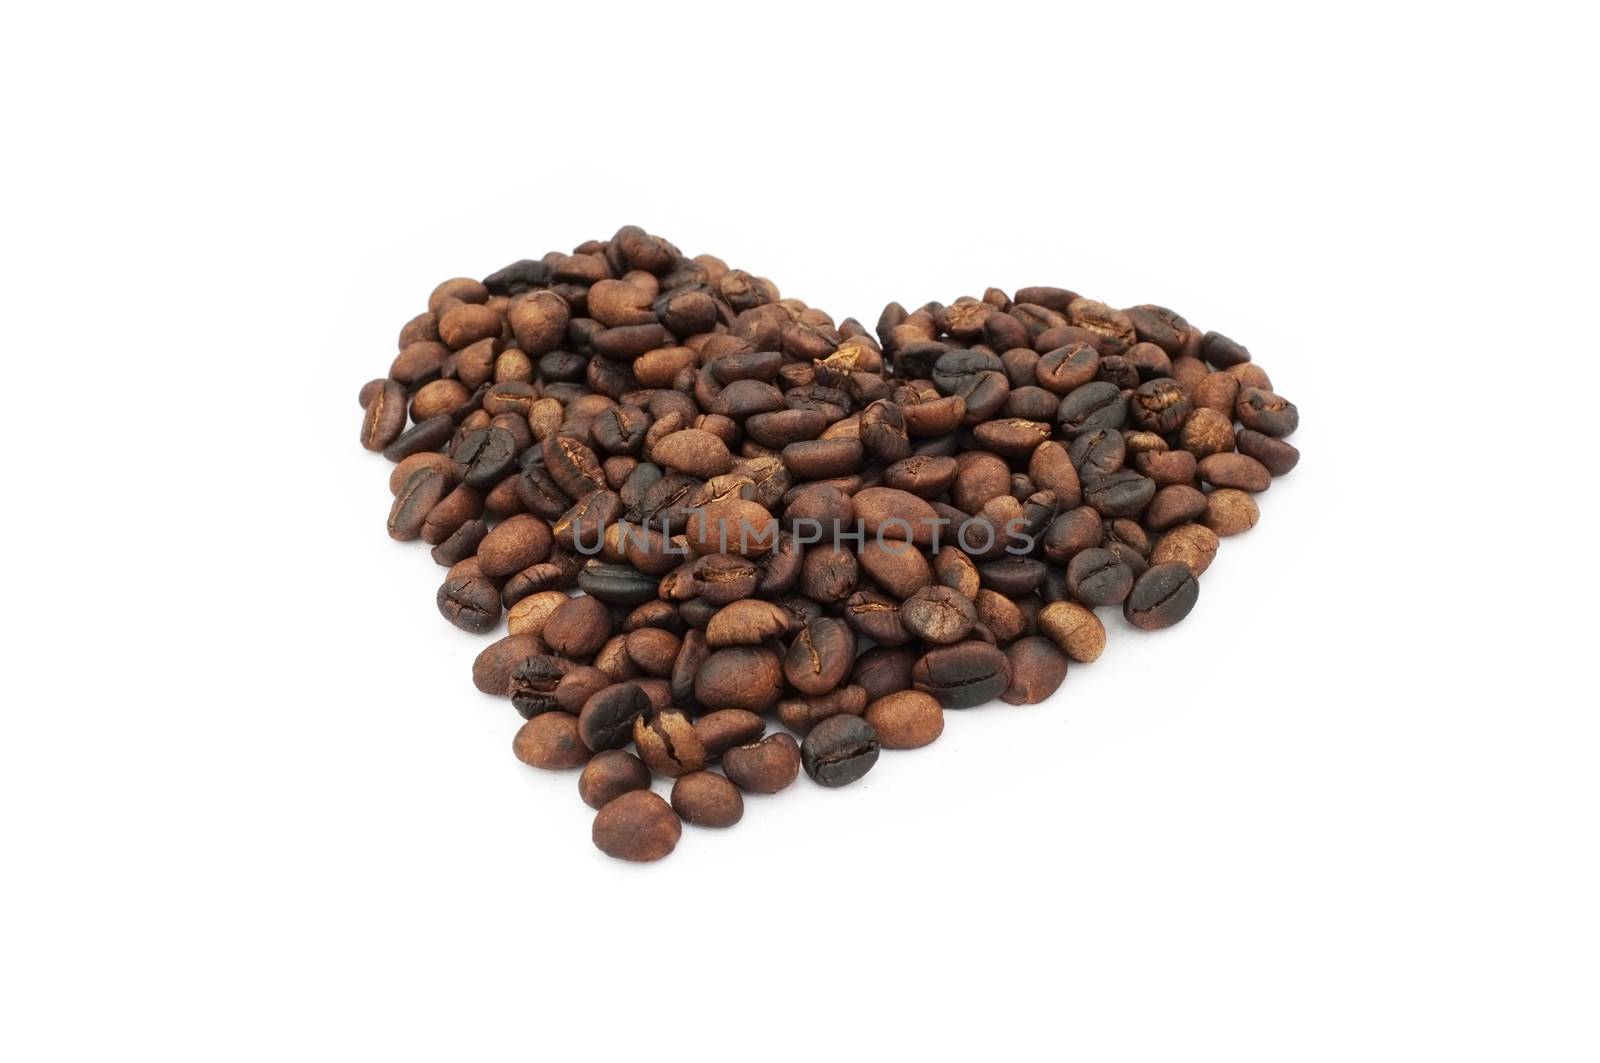 Coffee beans in heart shape